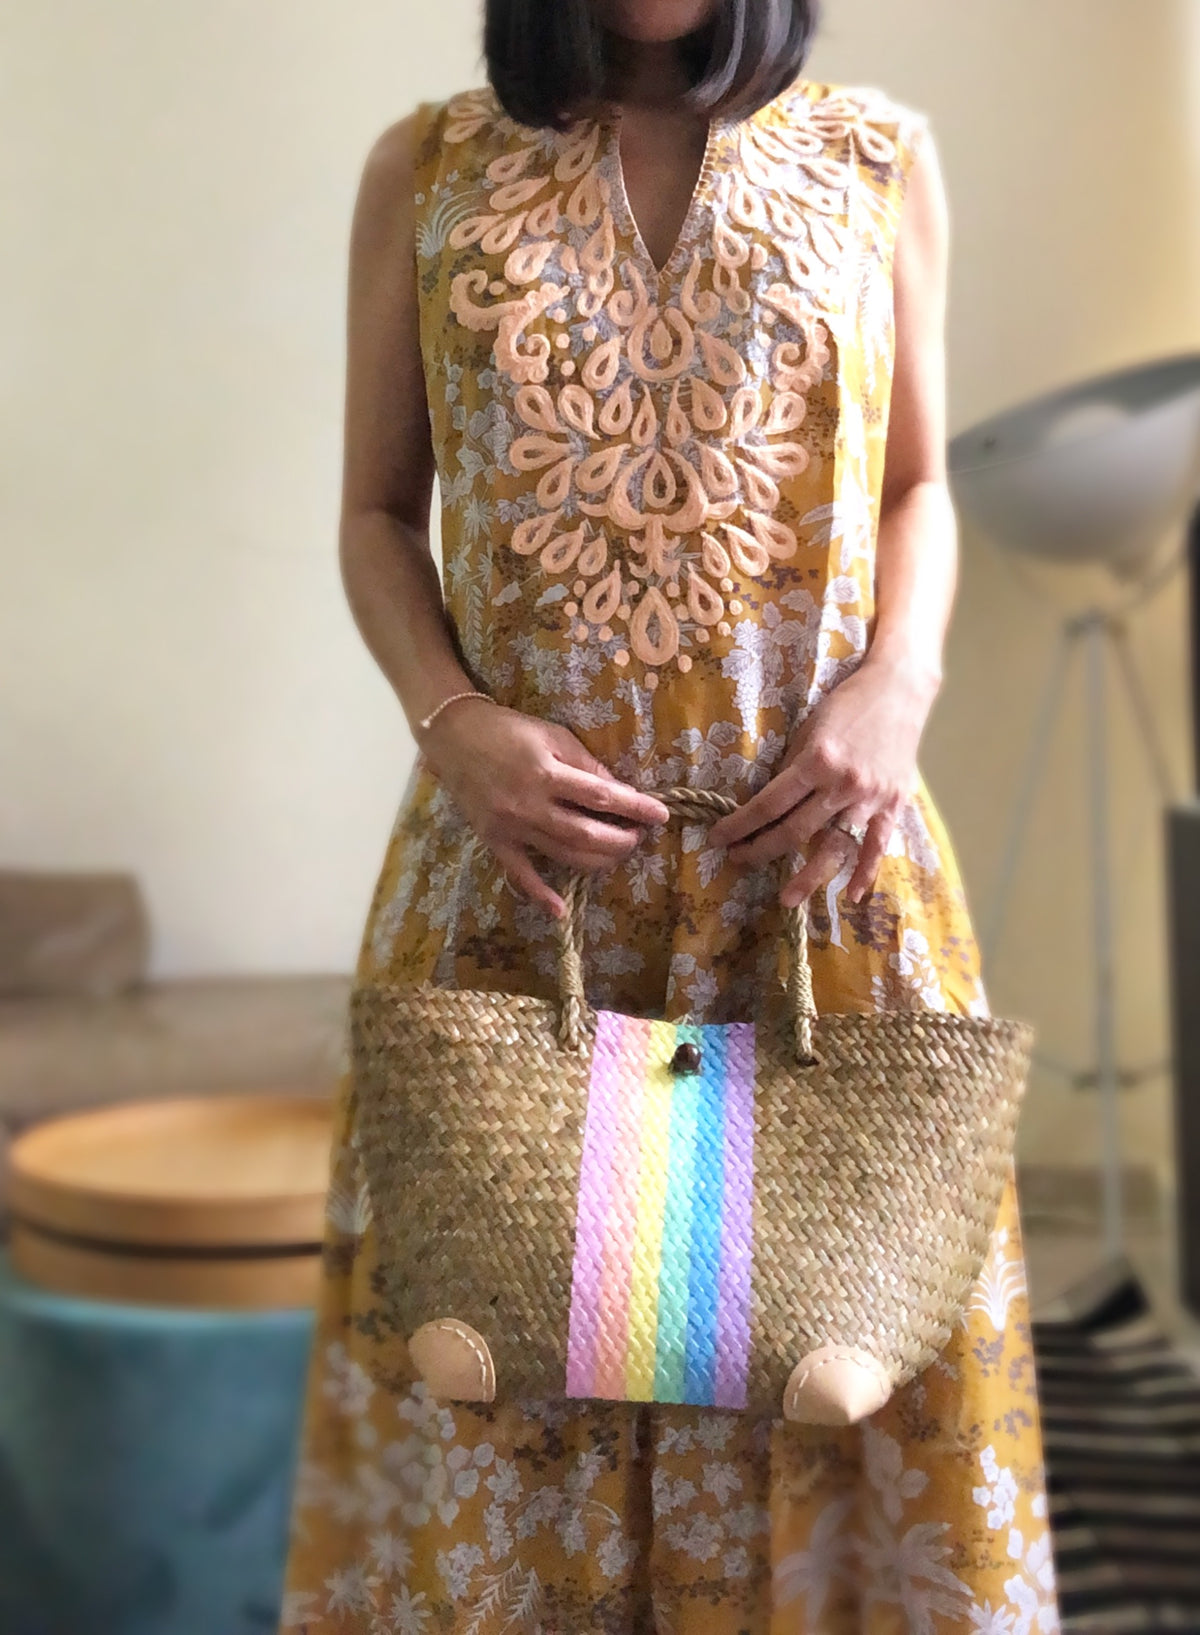 Hannah Rainbow Woven Bag (Pre-orders)